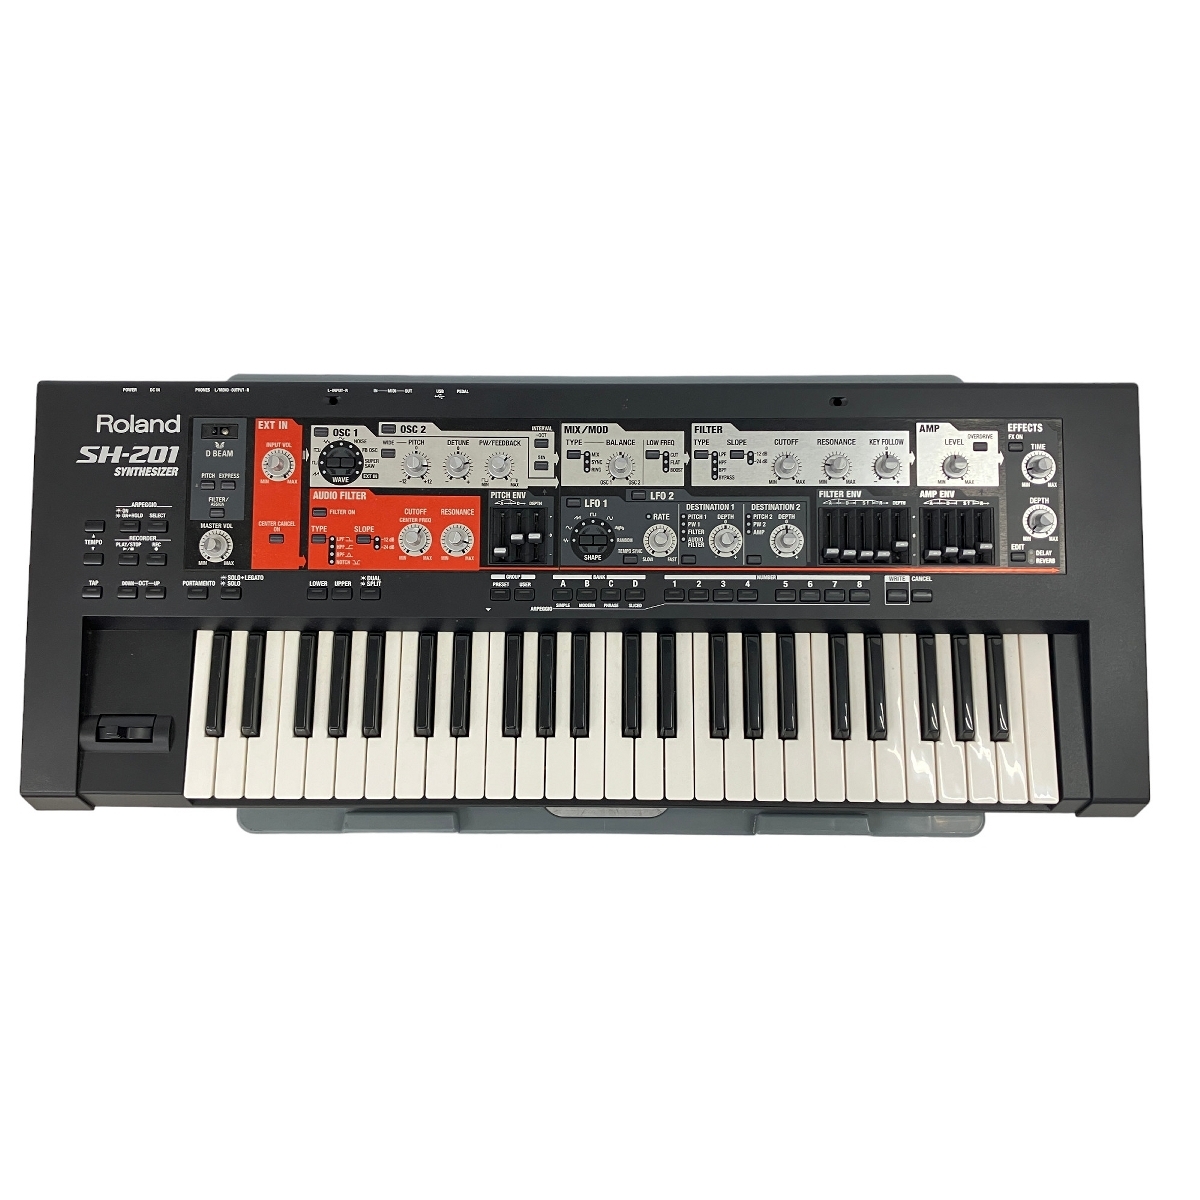 [ гарантия работы ]ROLAND SH-201 синтезатор электронное пианино 49 клавишные инструменты Roland б/у W8887406